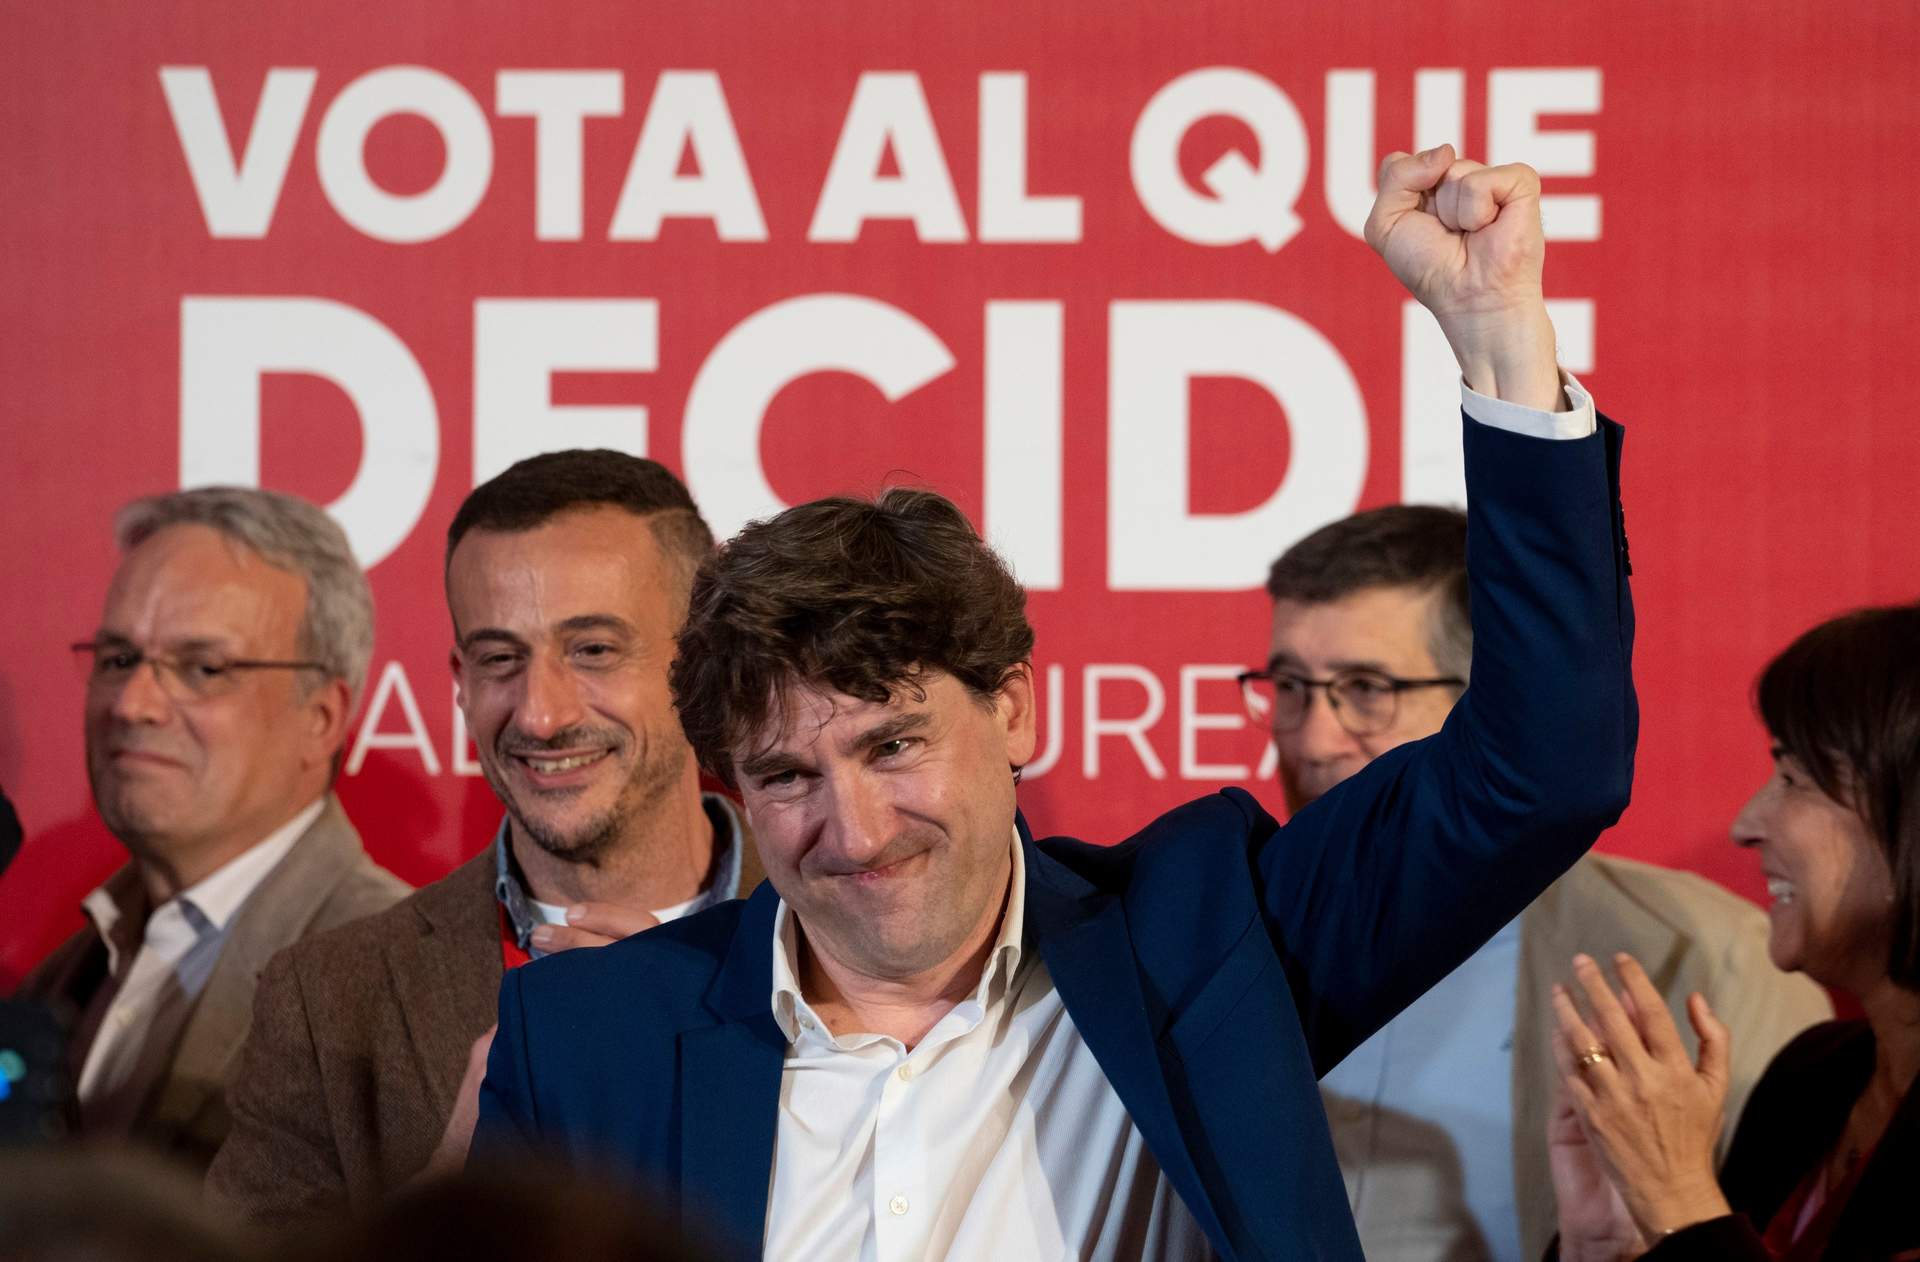 El PSOE sale reforzado de Euskadi con 12 escaños y tendrá más fuerza en su alianza con el PNV